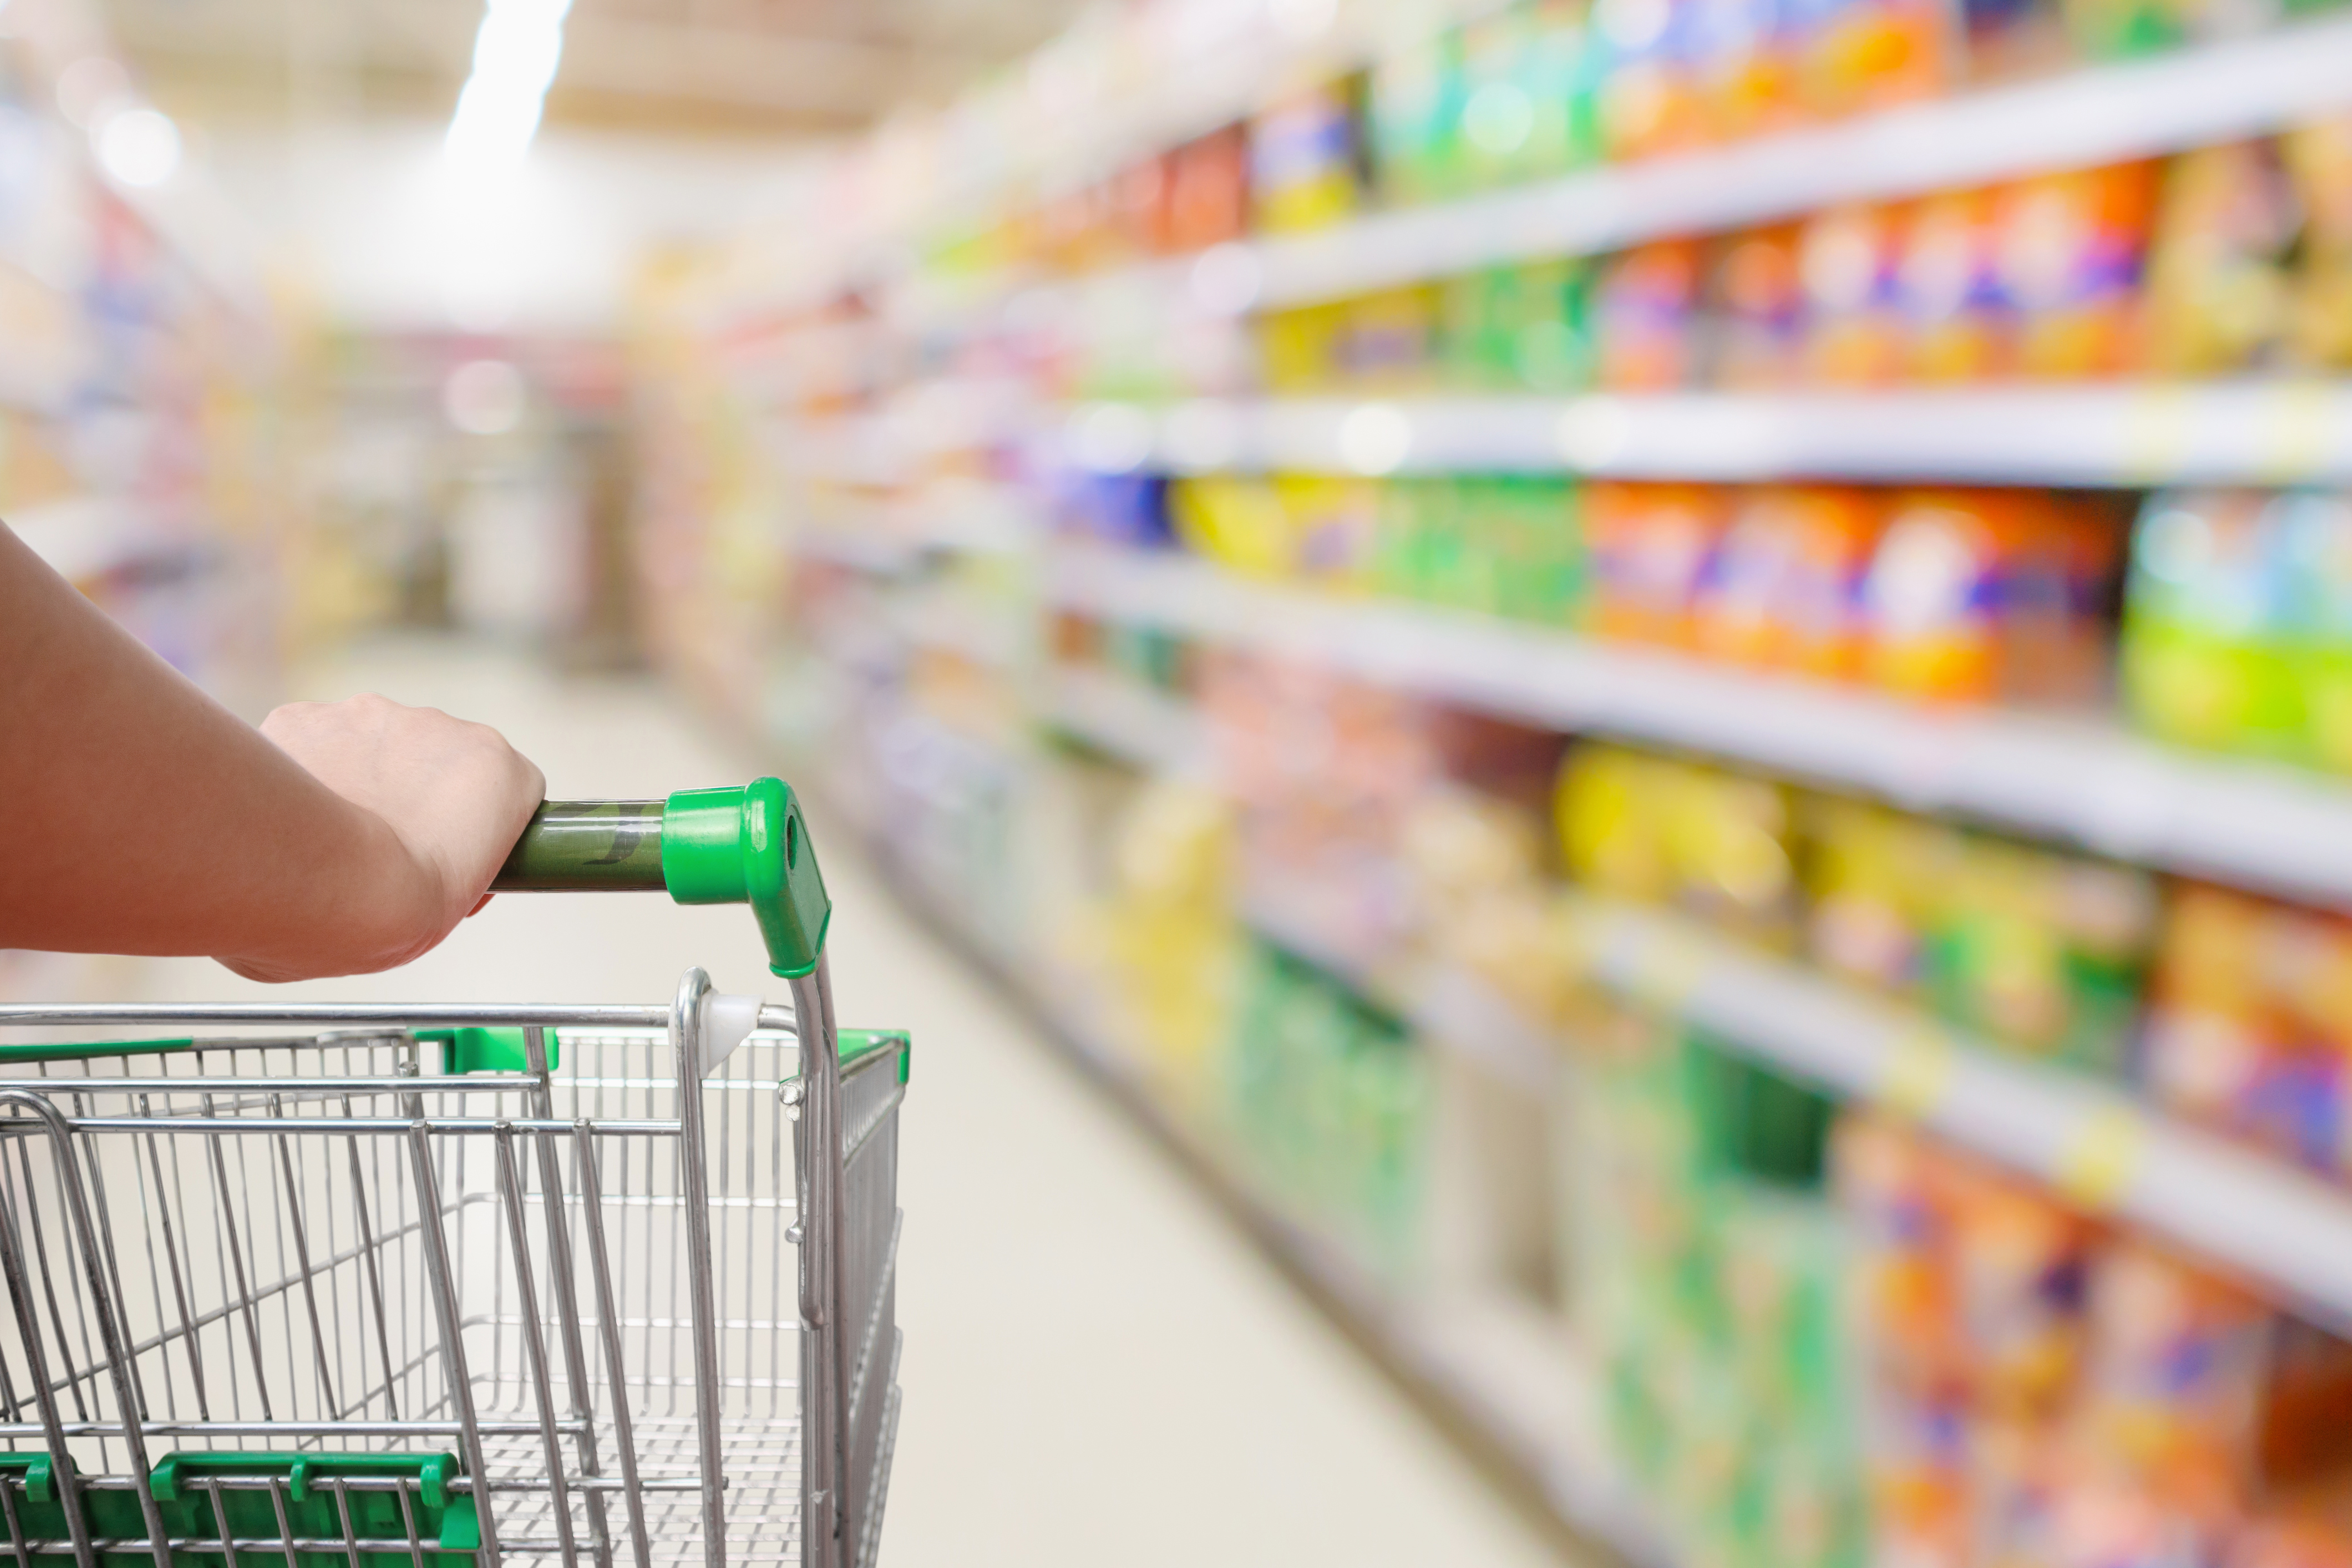 スーパーマーケットの消費者動向からみるCRM施策改善のポイント